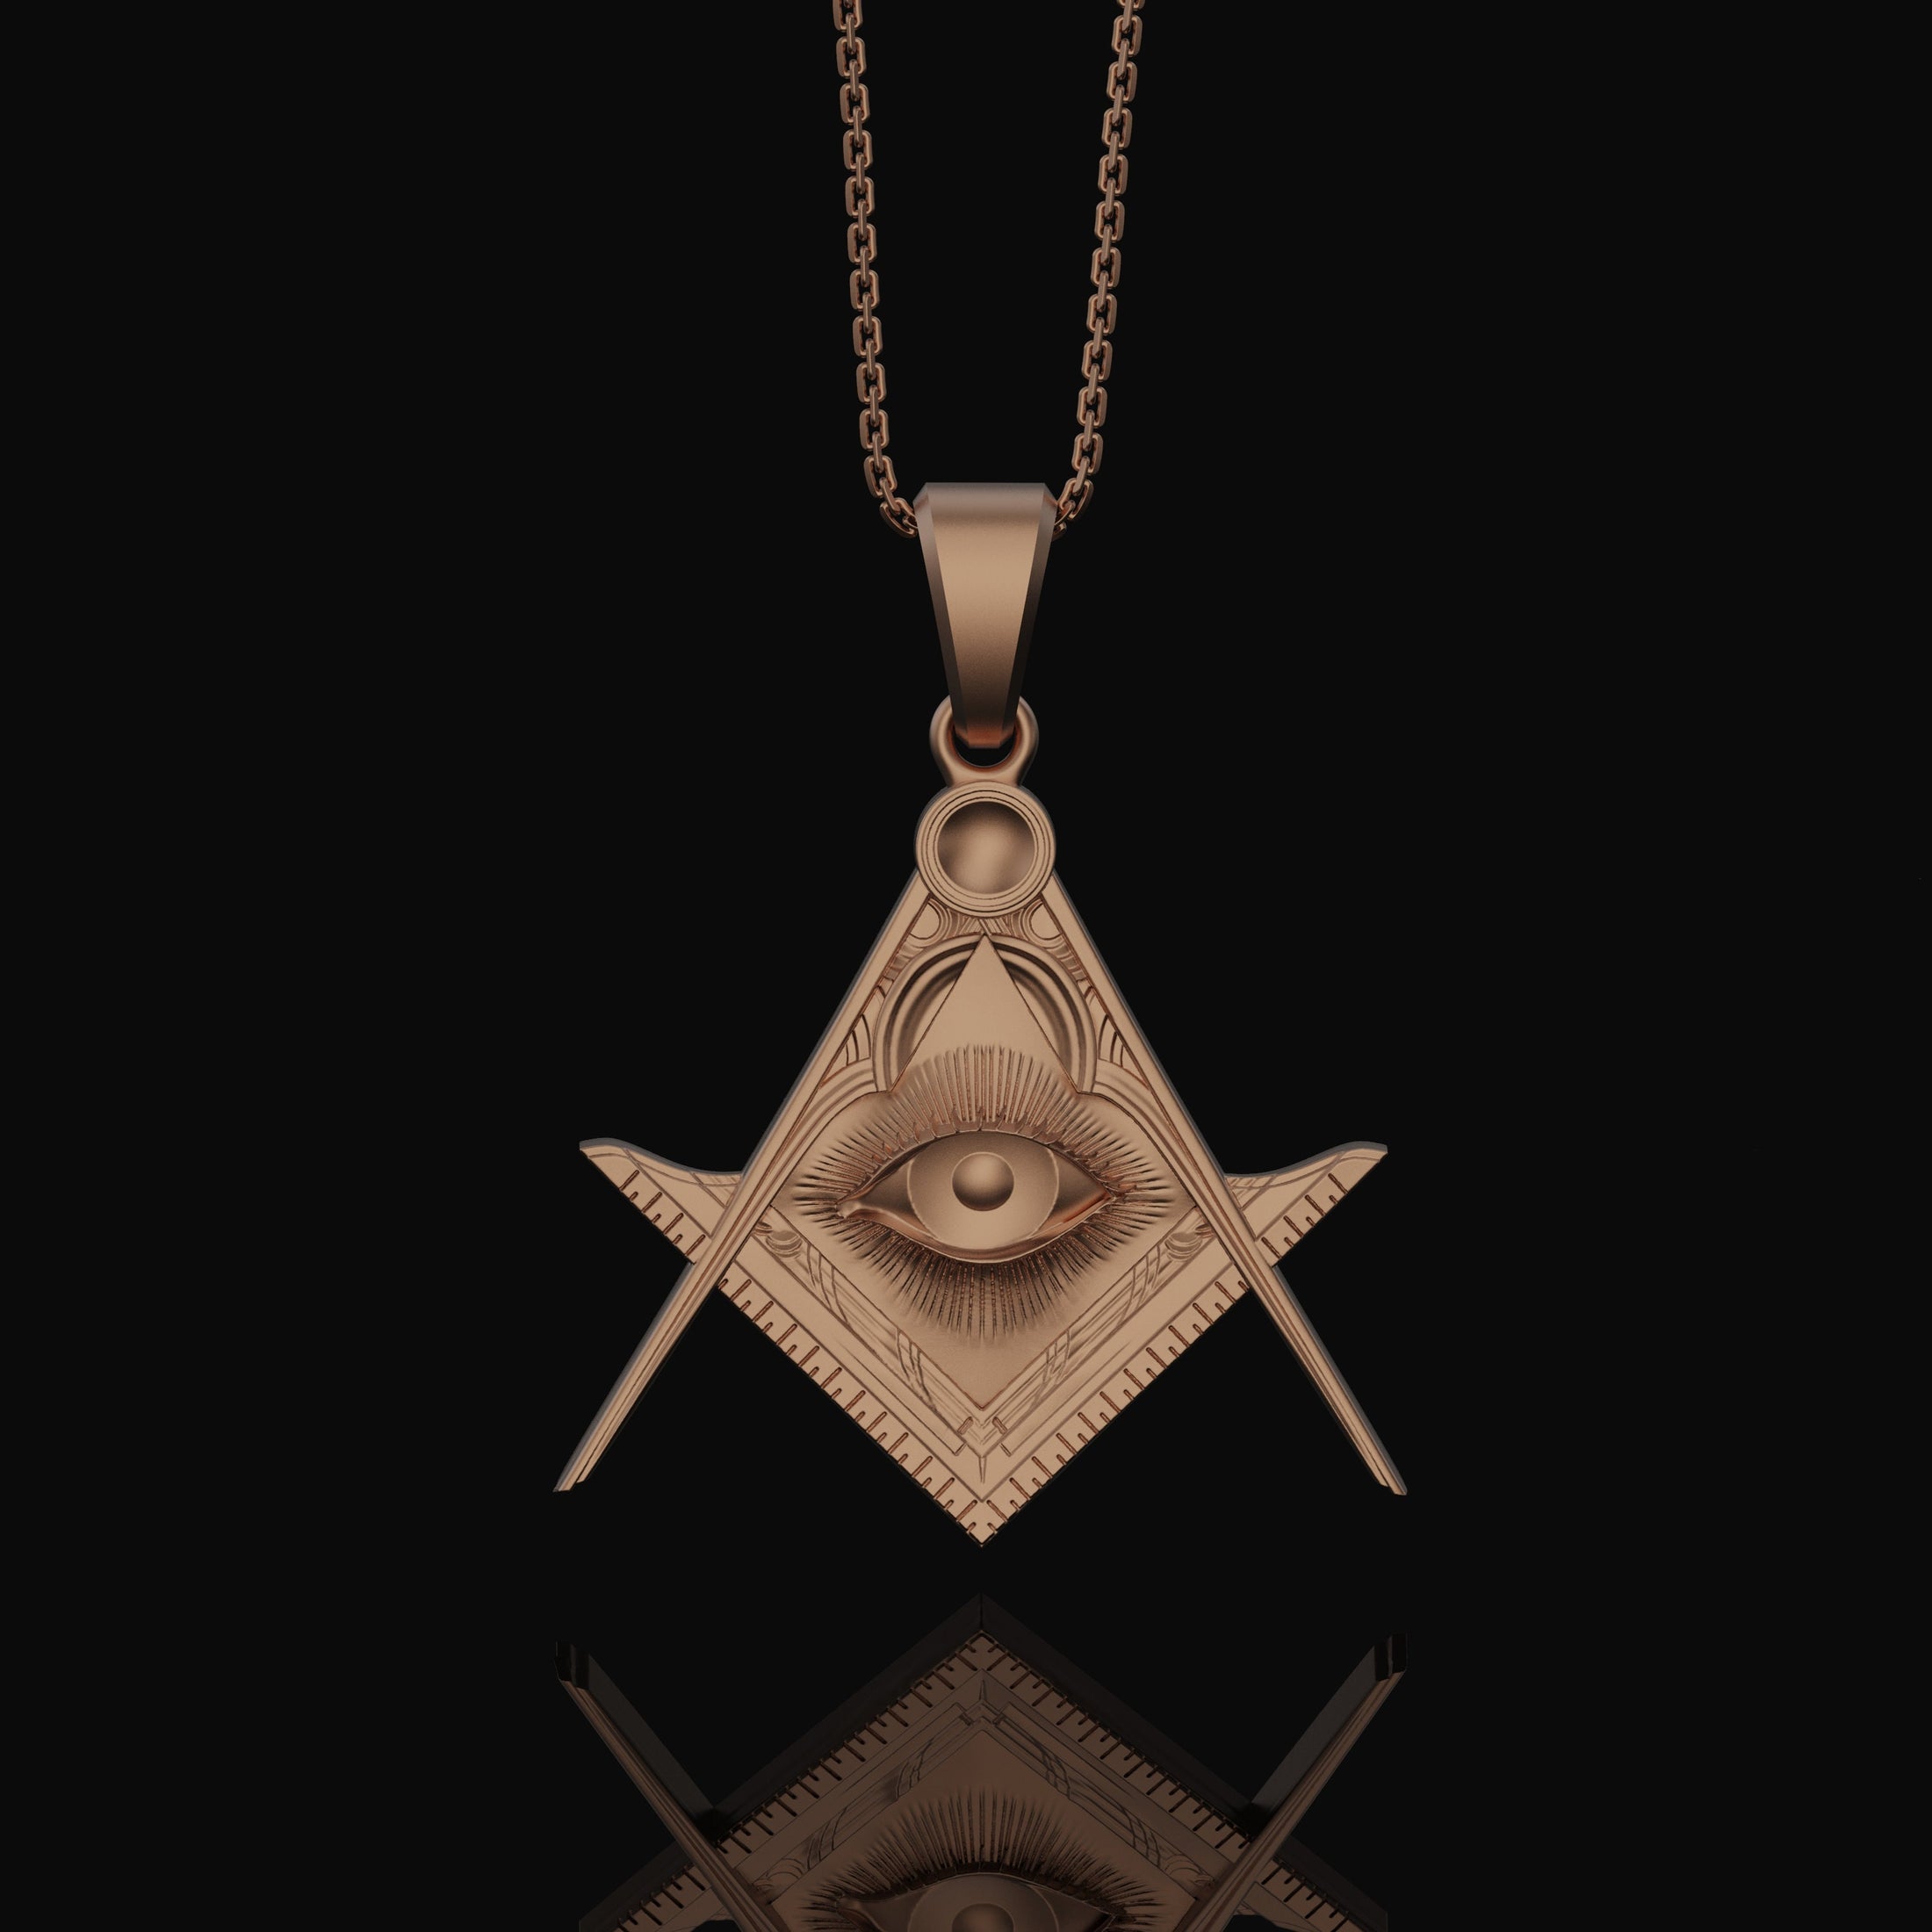 Silver Master Mason Pendant - Freemason Symbol with Eye of Providence, Masonic Necklace, Esoteric Jewelry